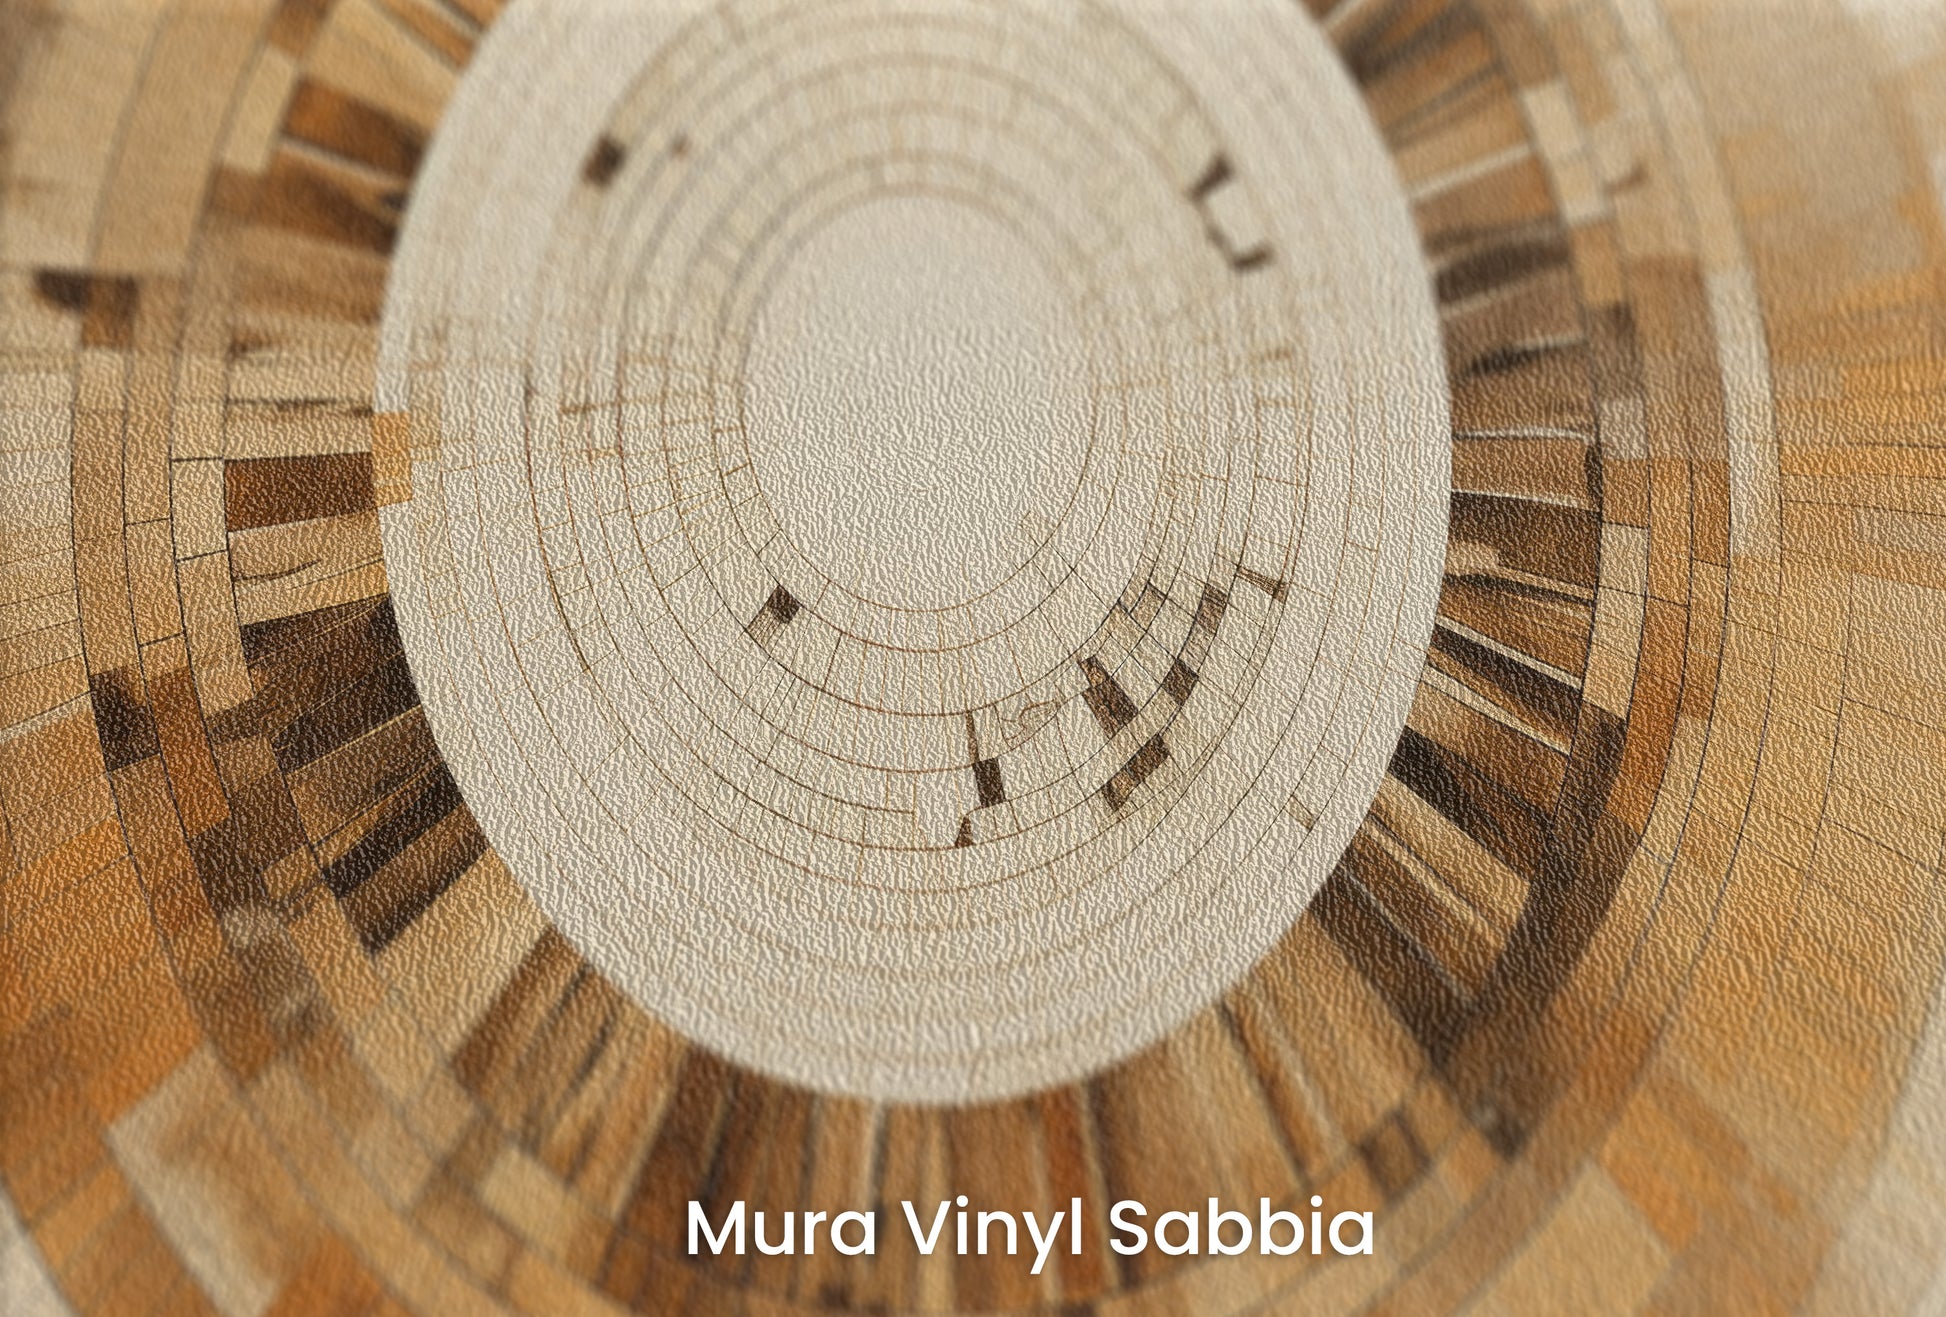 Zbliżenie na artystyczną fototapetę o nazwie ARCHITECTURAL ORBITAL DESIGN na podłożu Mura Vinyl Sabbia struktura grubego ziarna piasku.